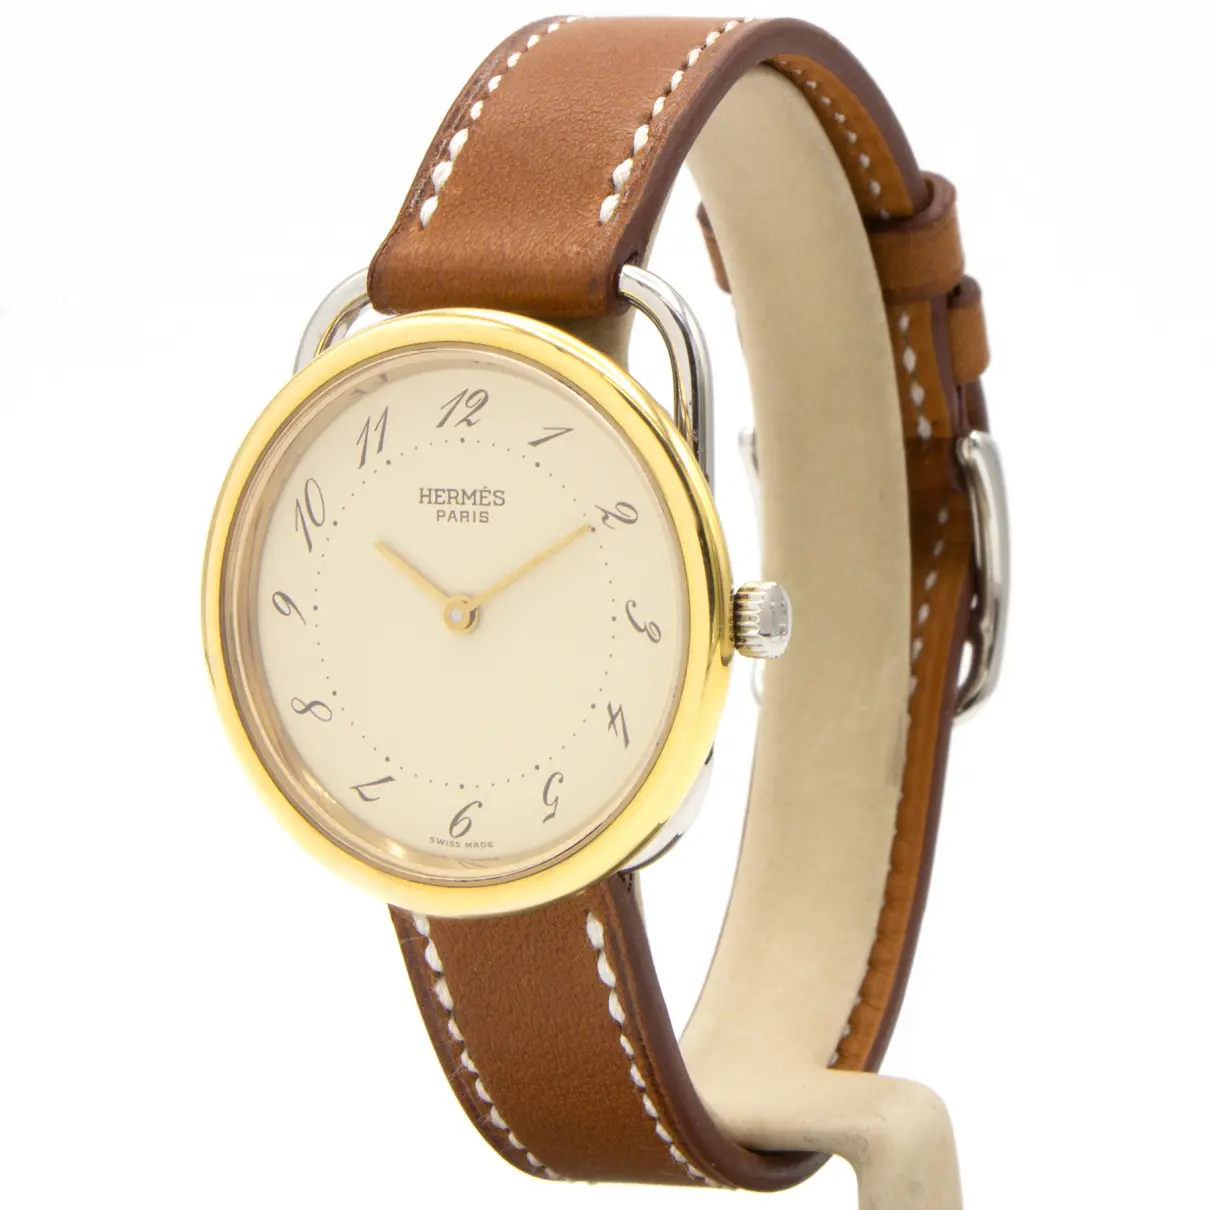 Buy Hermès Arceau watch online